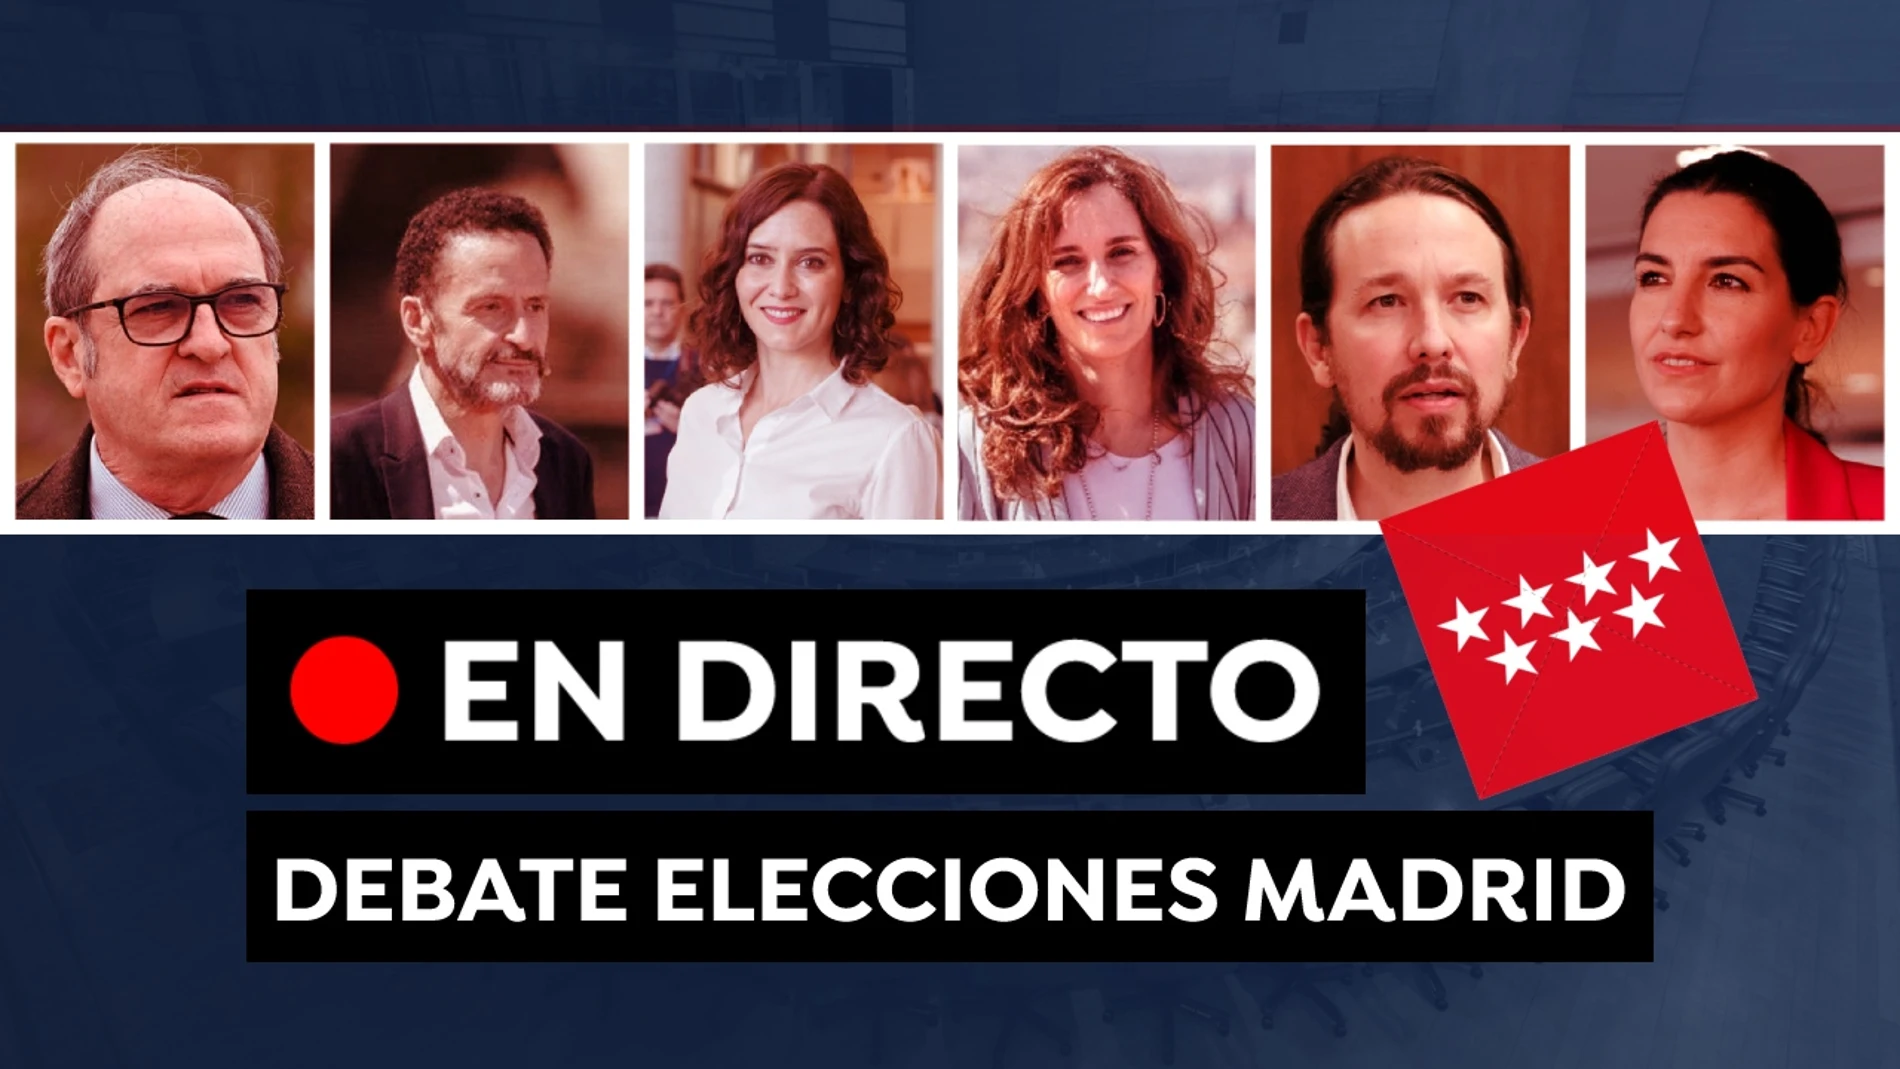 Debate Elecciones de Madrid: Última hora de los candidatos y ver el debate hoy, en directo